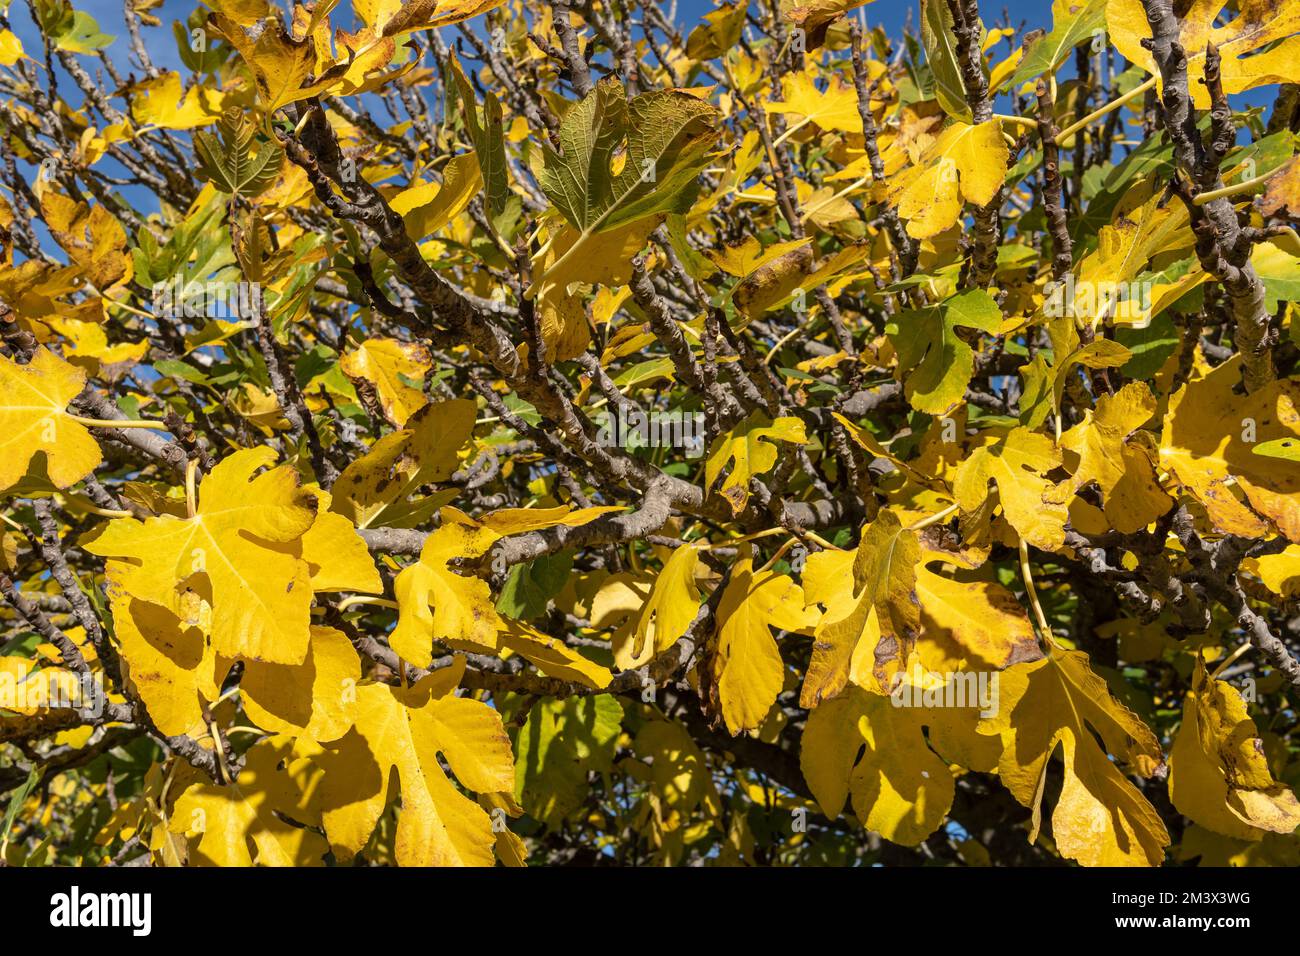 Nahaufnahme der Blätter eines Feigenbaums, Ficus carica, in der Herbstsaison mit gelblichen Farbtönen. Insel Mallorca, Spanien Stockfoto